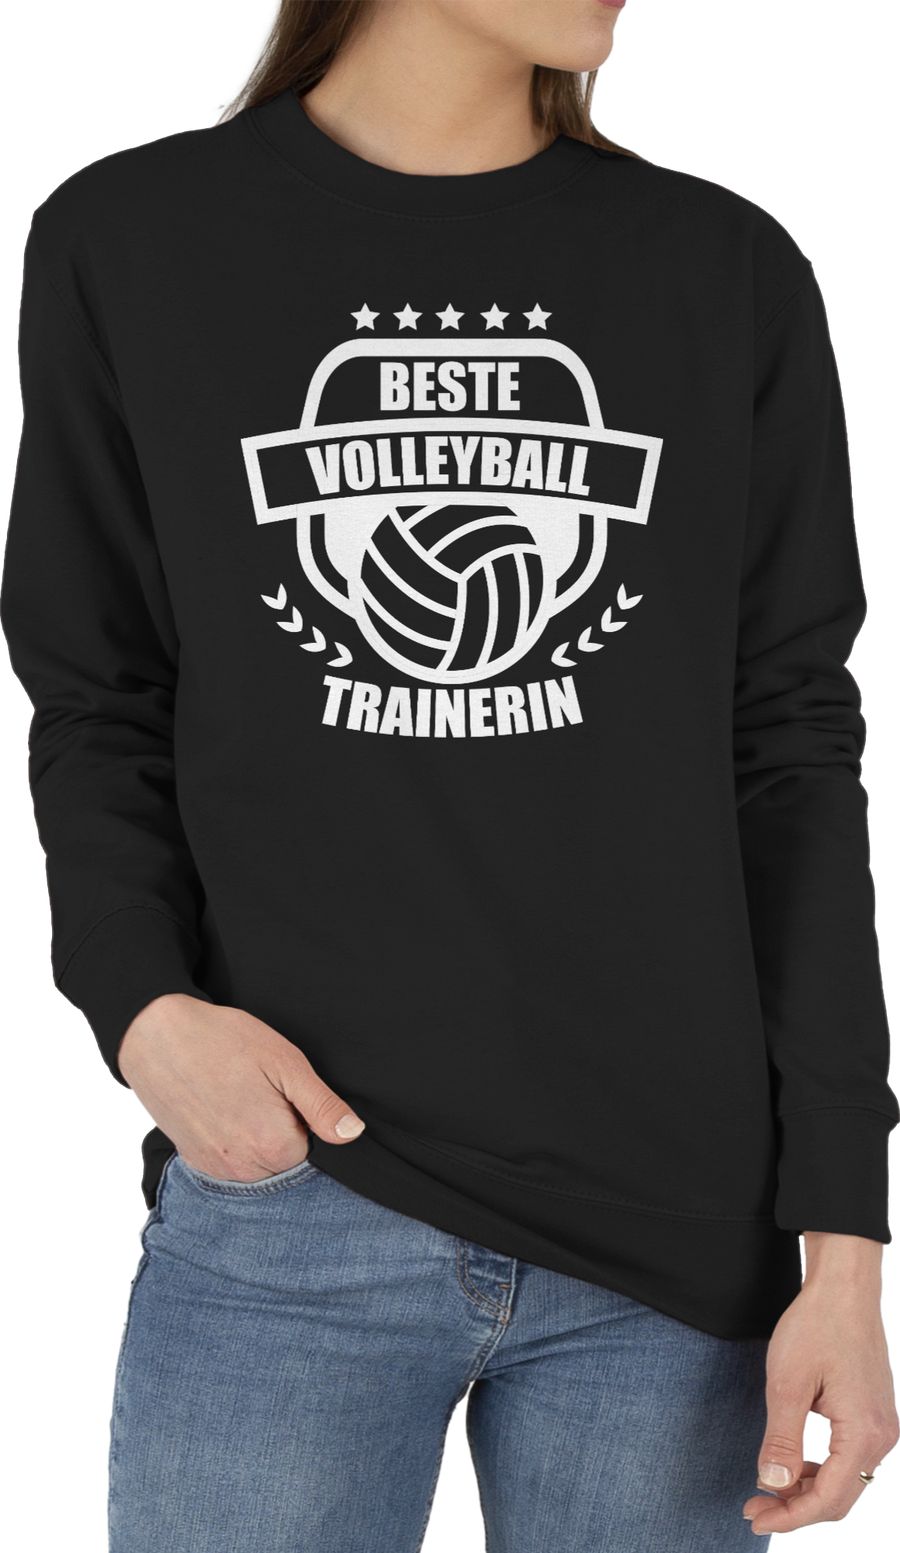 Beste Volleyball Trainerin